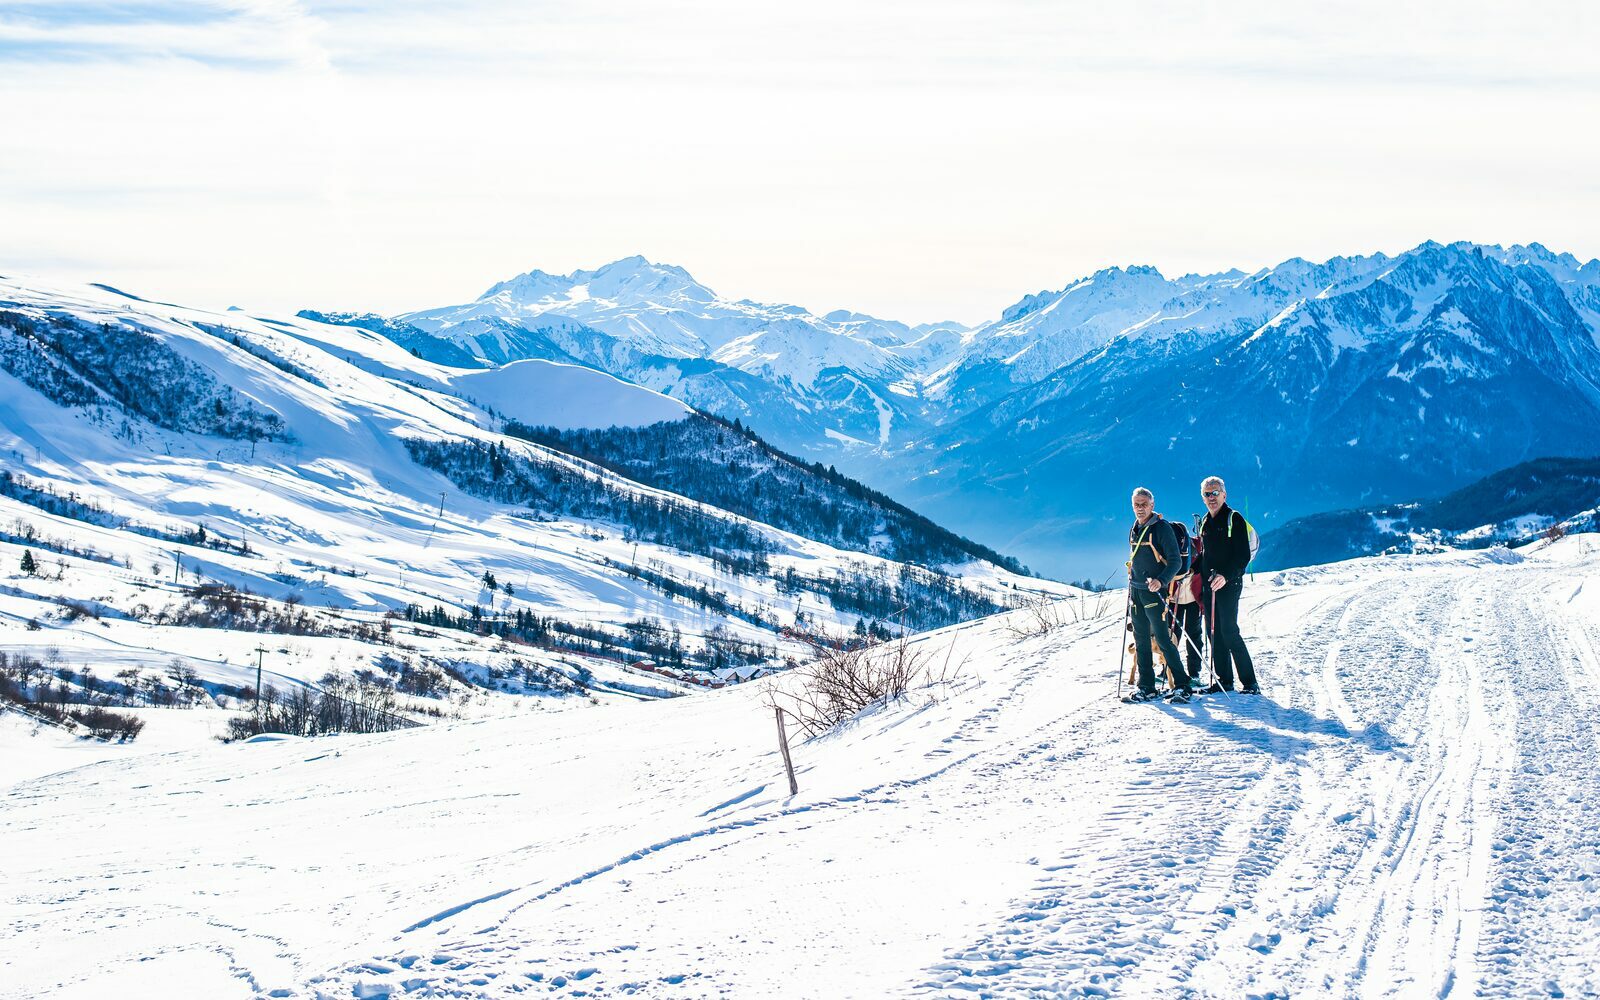 Wandern, Spazierengehen oder Skilanglauf in den Alpen